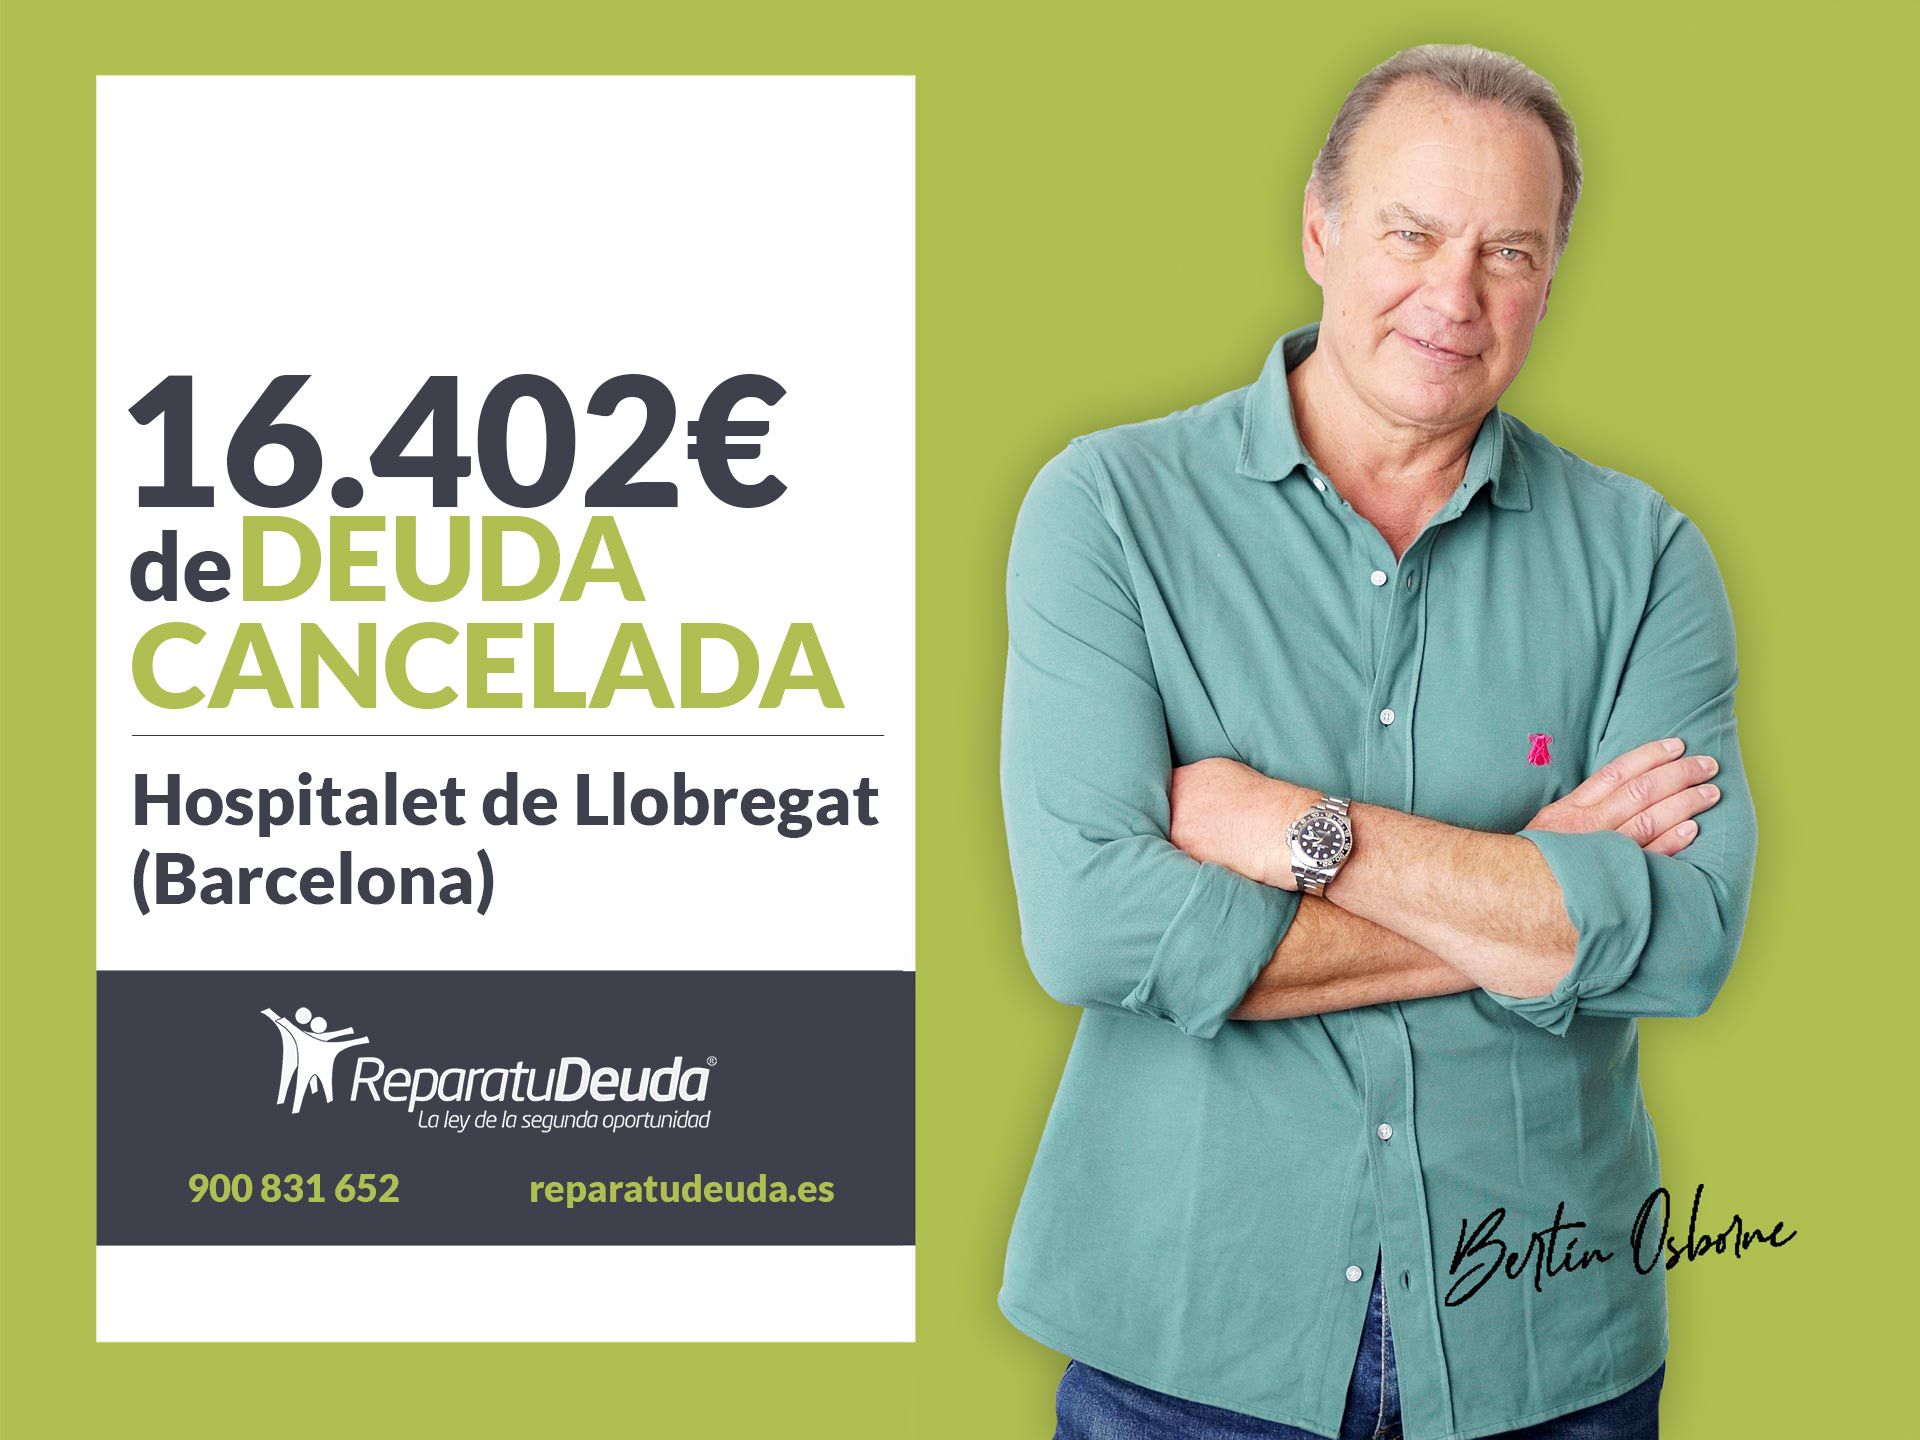 Repara tu Deuda cancela 16.402? en LHospitalet de Llobregat (Barcelona) con la Ley de Segunda Oportunidad